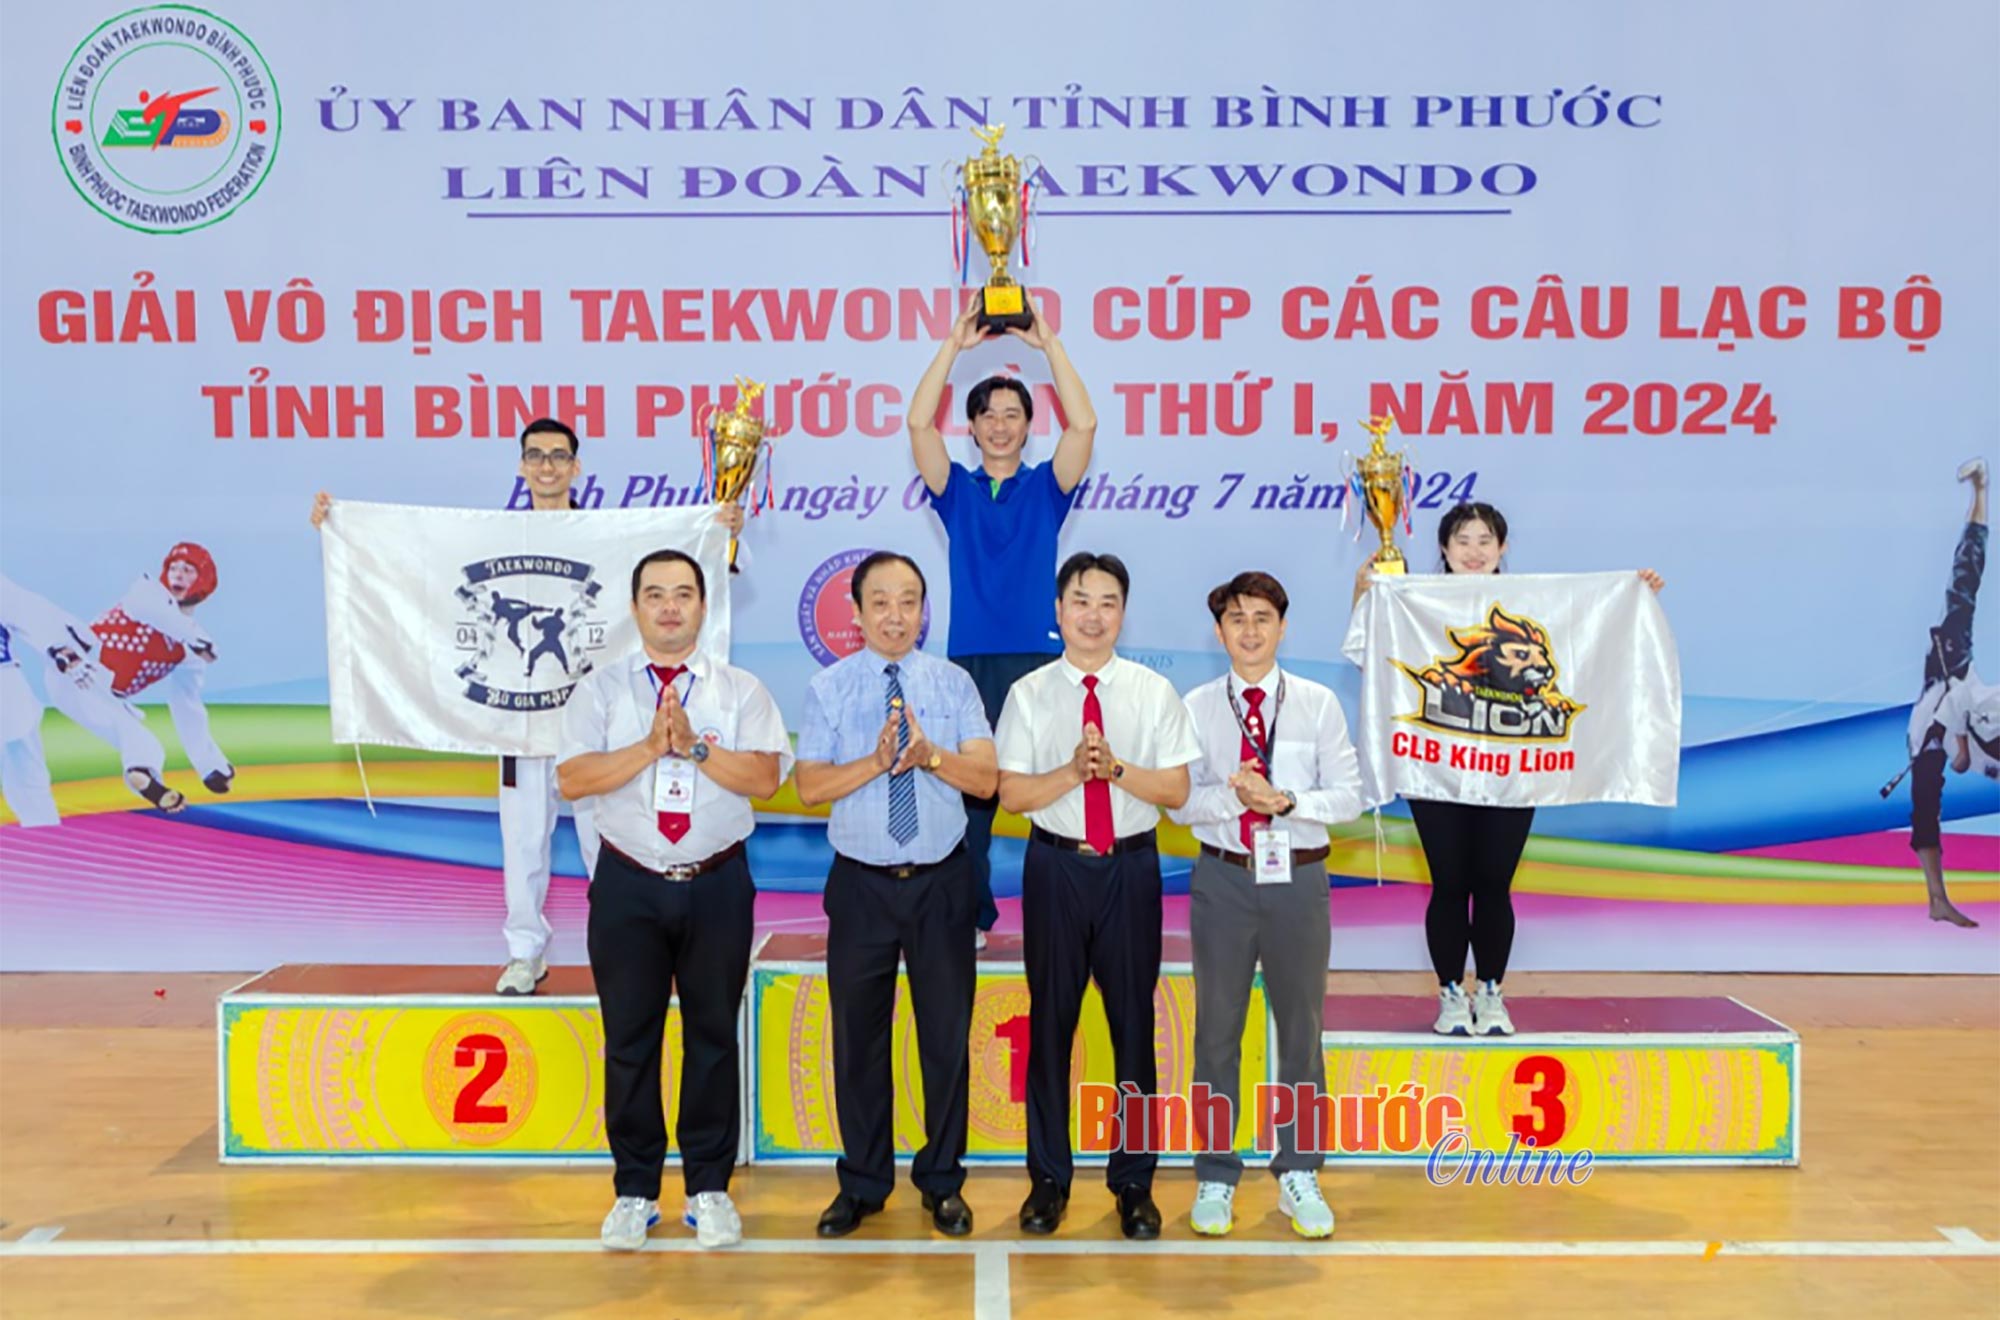 CLB Phước Bình 1 nhất toàn đoàn giải Vô địch Taekwondo cúp các CLB tỉnh Bình Phước